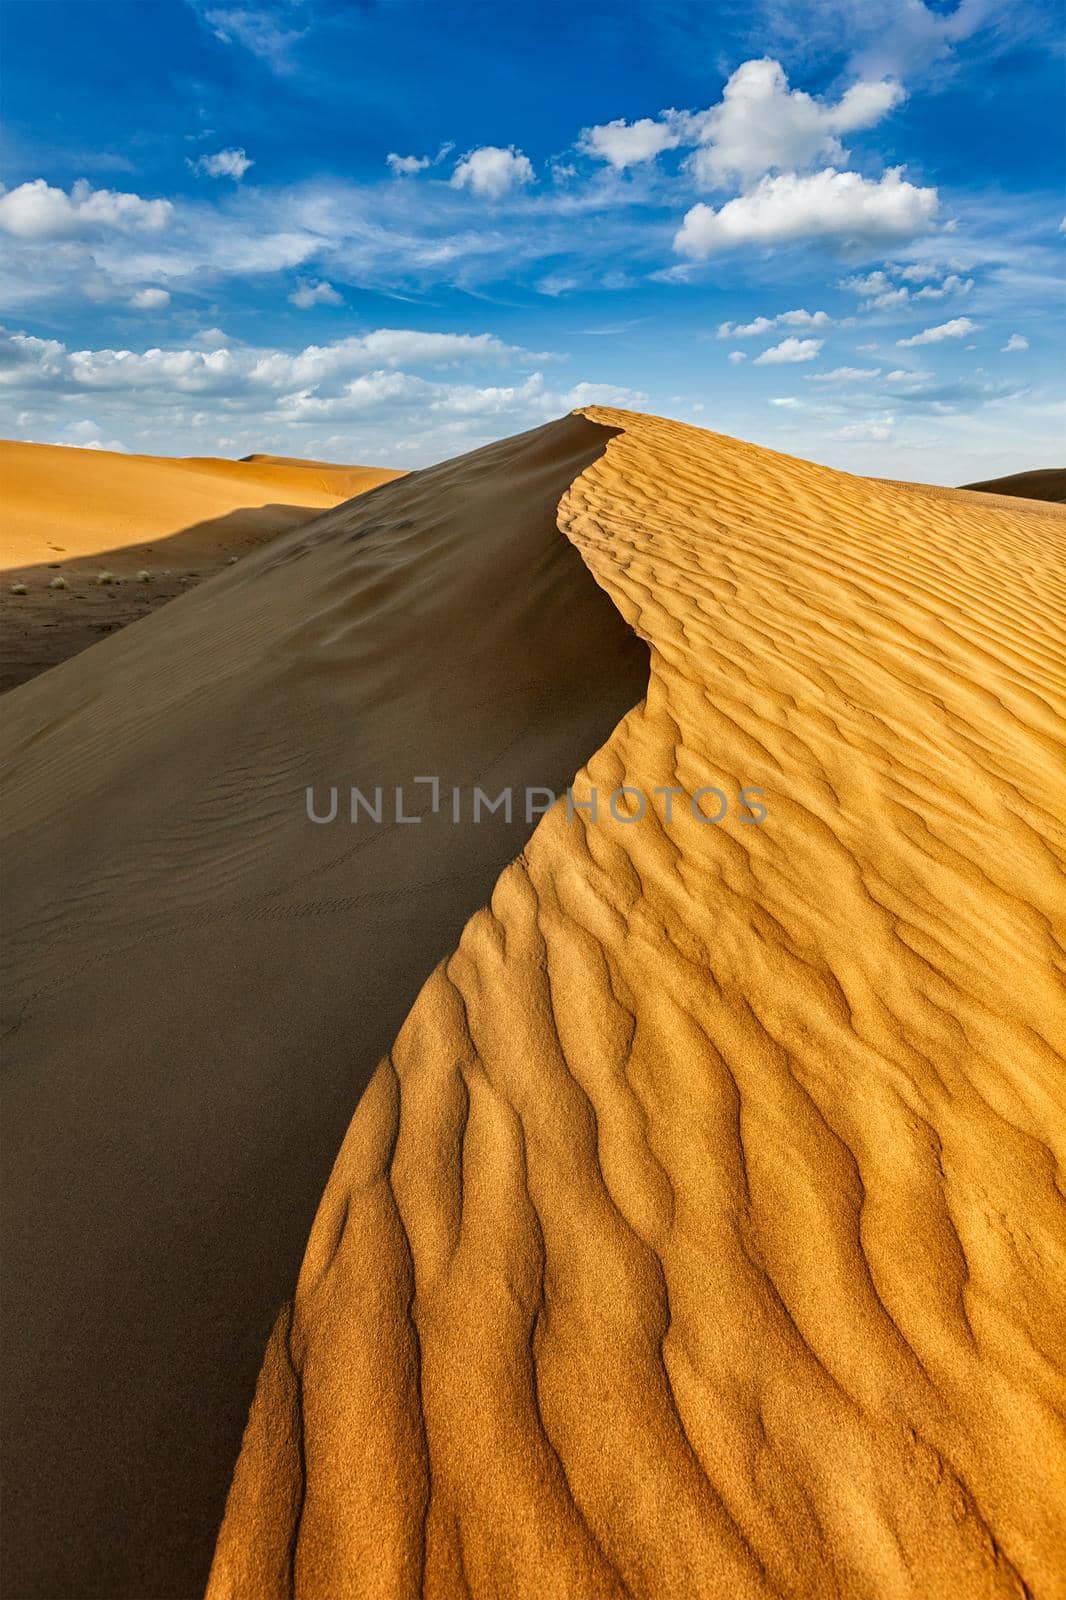 Dunes in Thar Desert by dimol